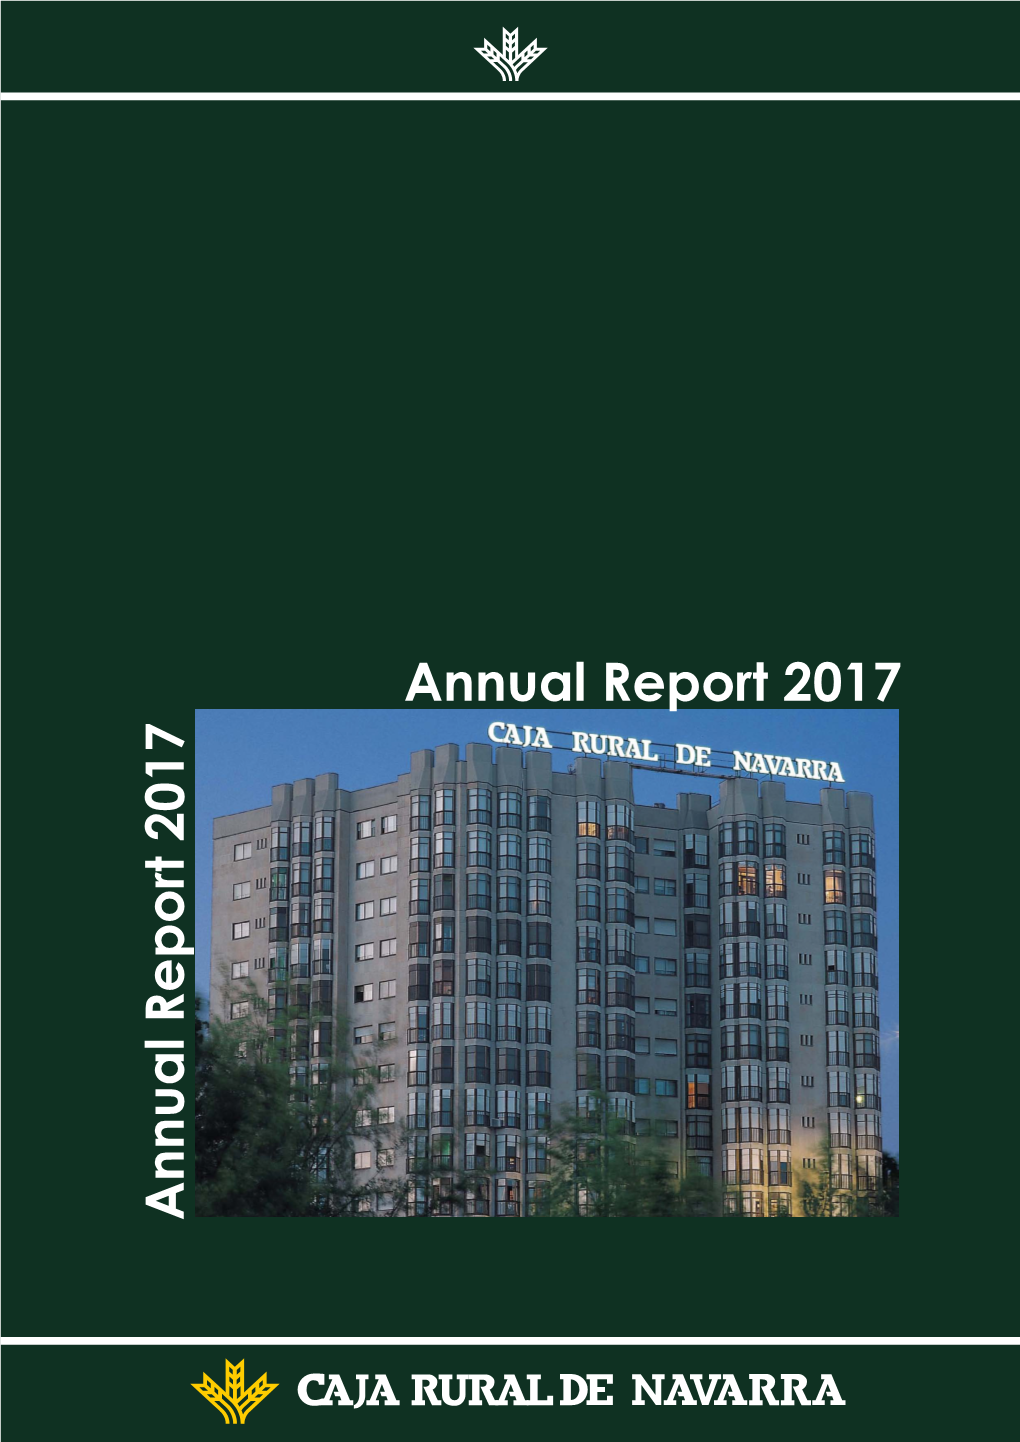 Annual Report 2017 Annual Report 2017